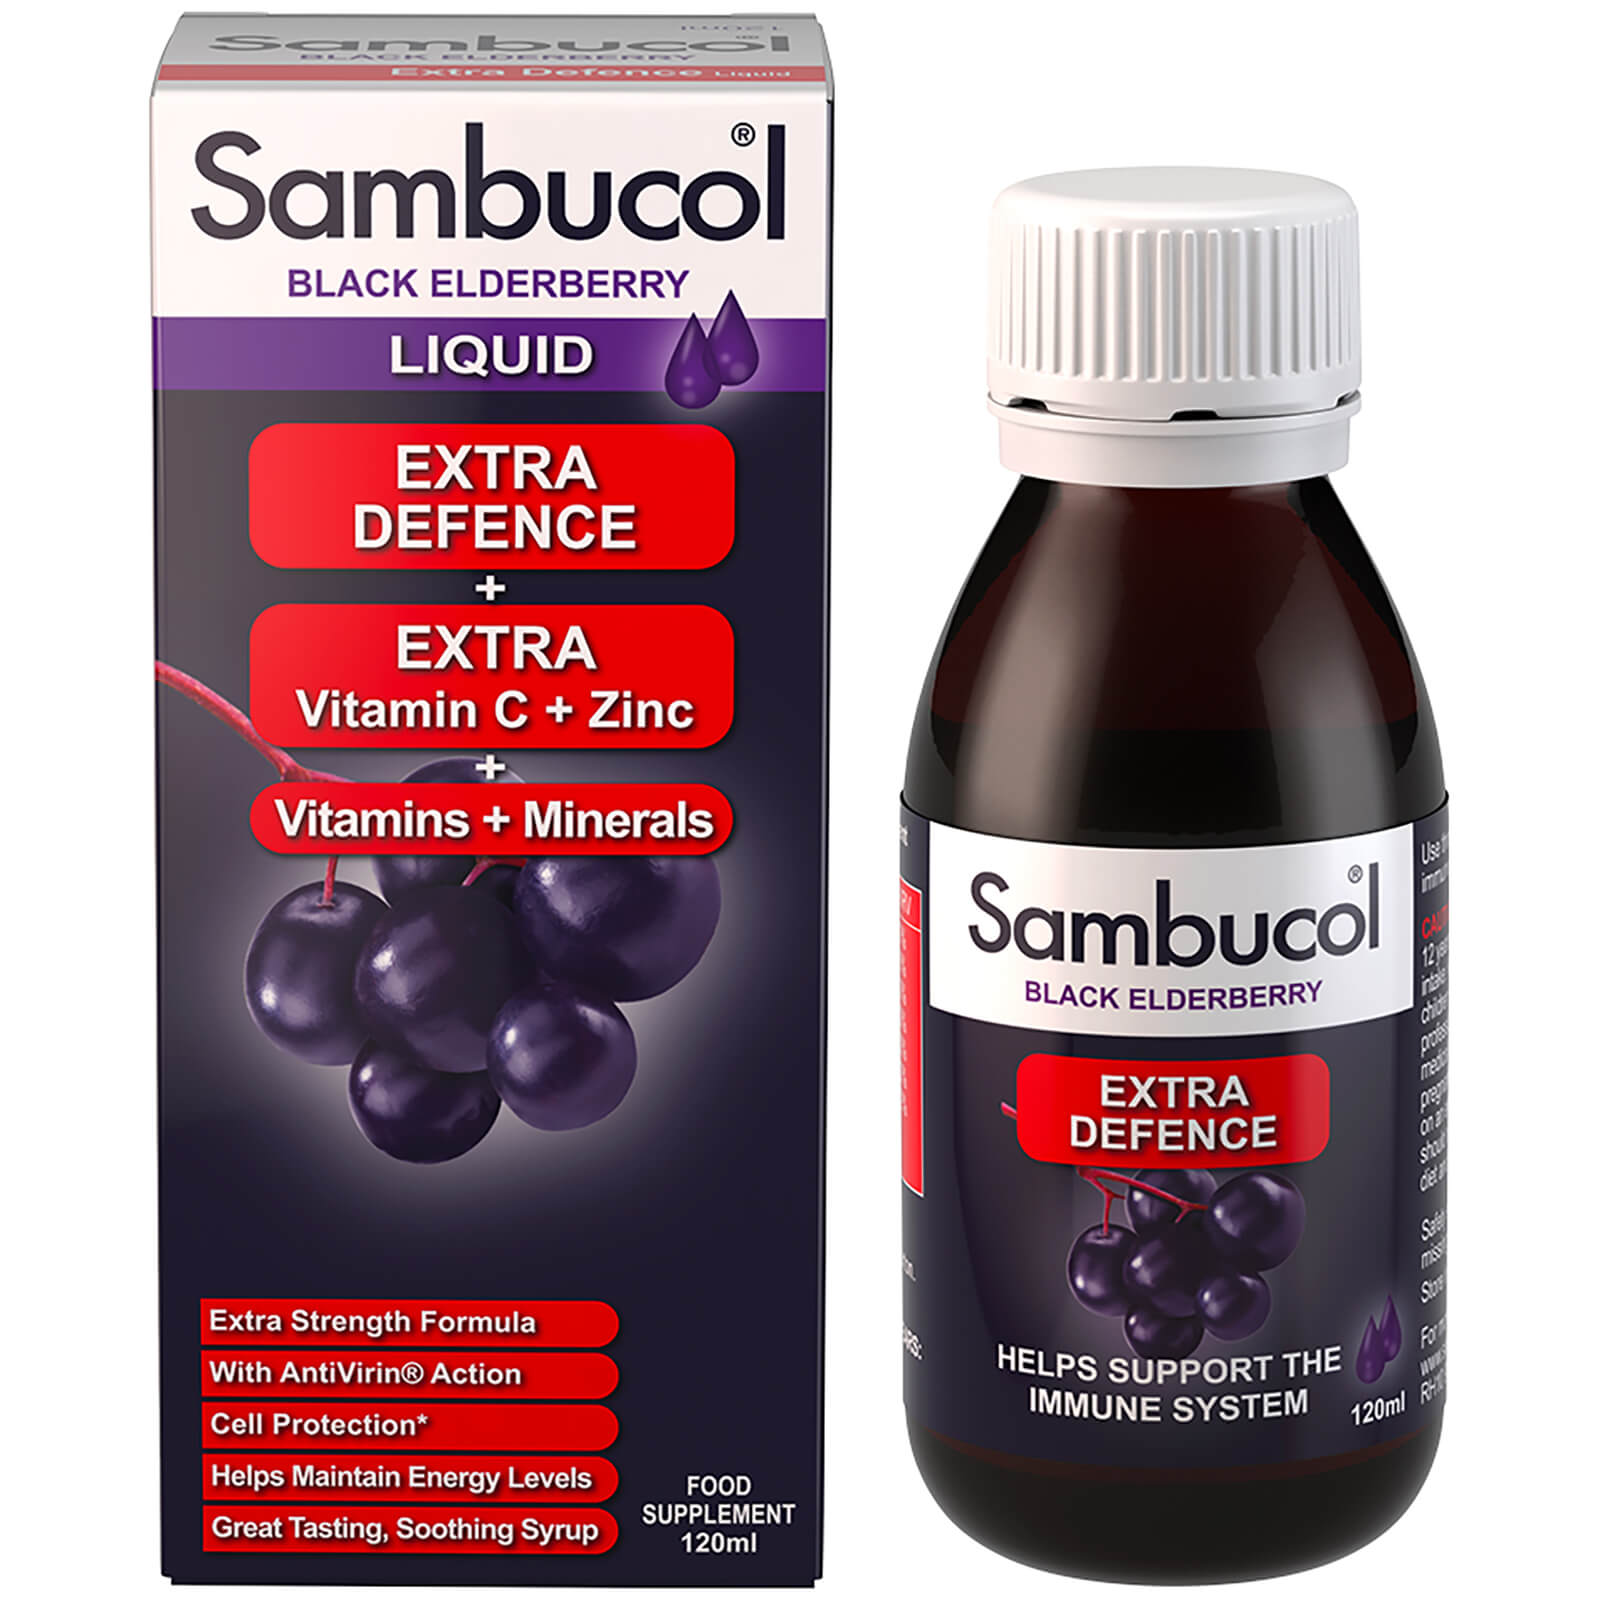 Sambucol Extra Defence (120ml) lookfantastic.com imagine